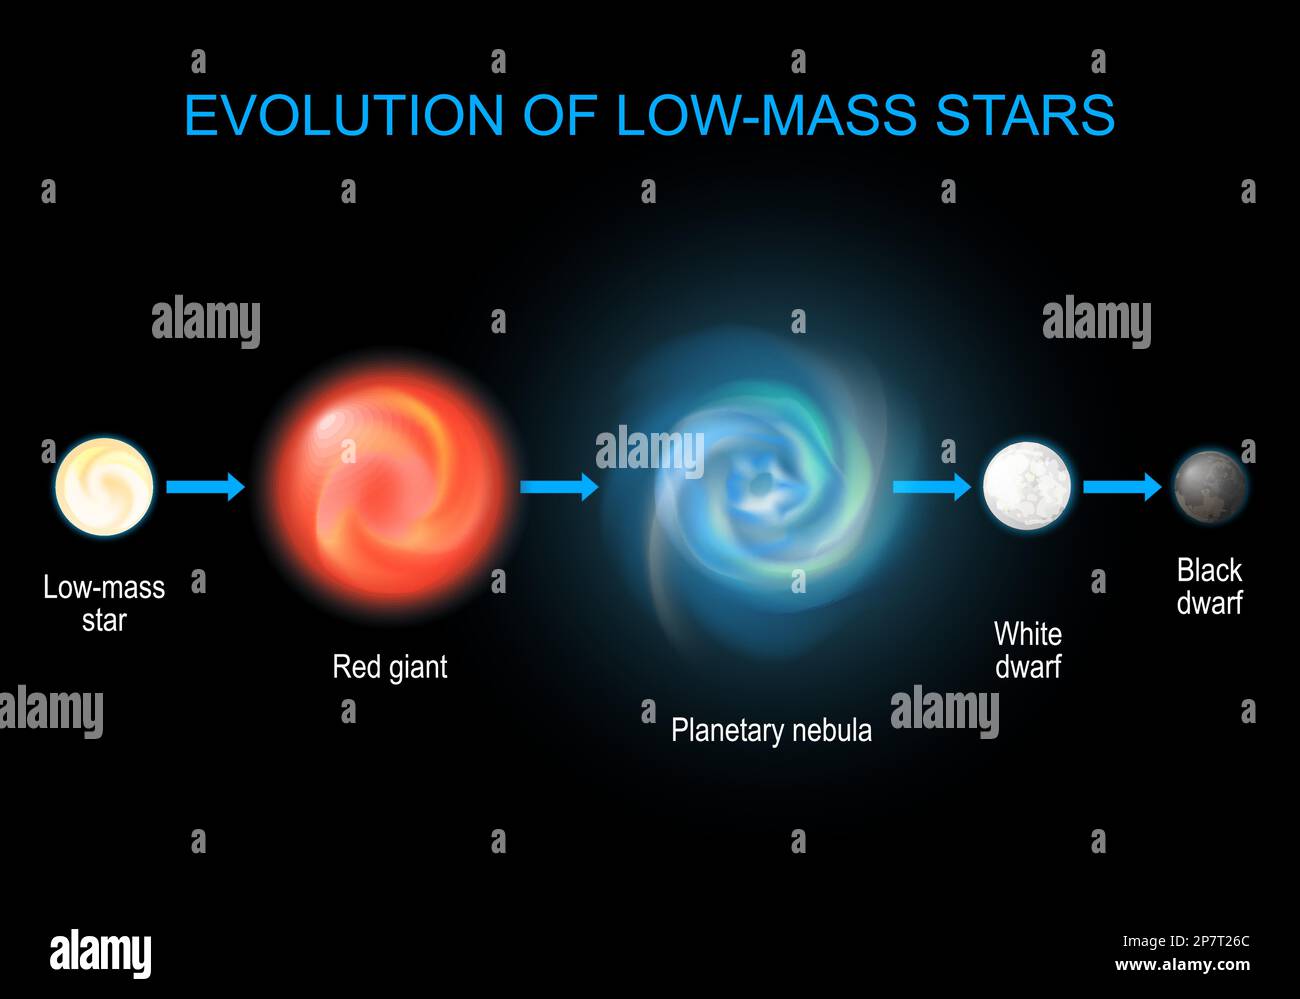 Évolution stellaire. Cycle de vie des étoiles basses du géant rouge et de la nébuleuse planétaire aux nains noirs et blancs. diagramme d'infographie sur l'astronomie. Illustration de Vecteur